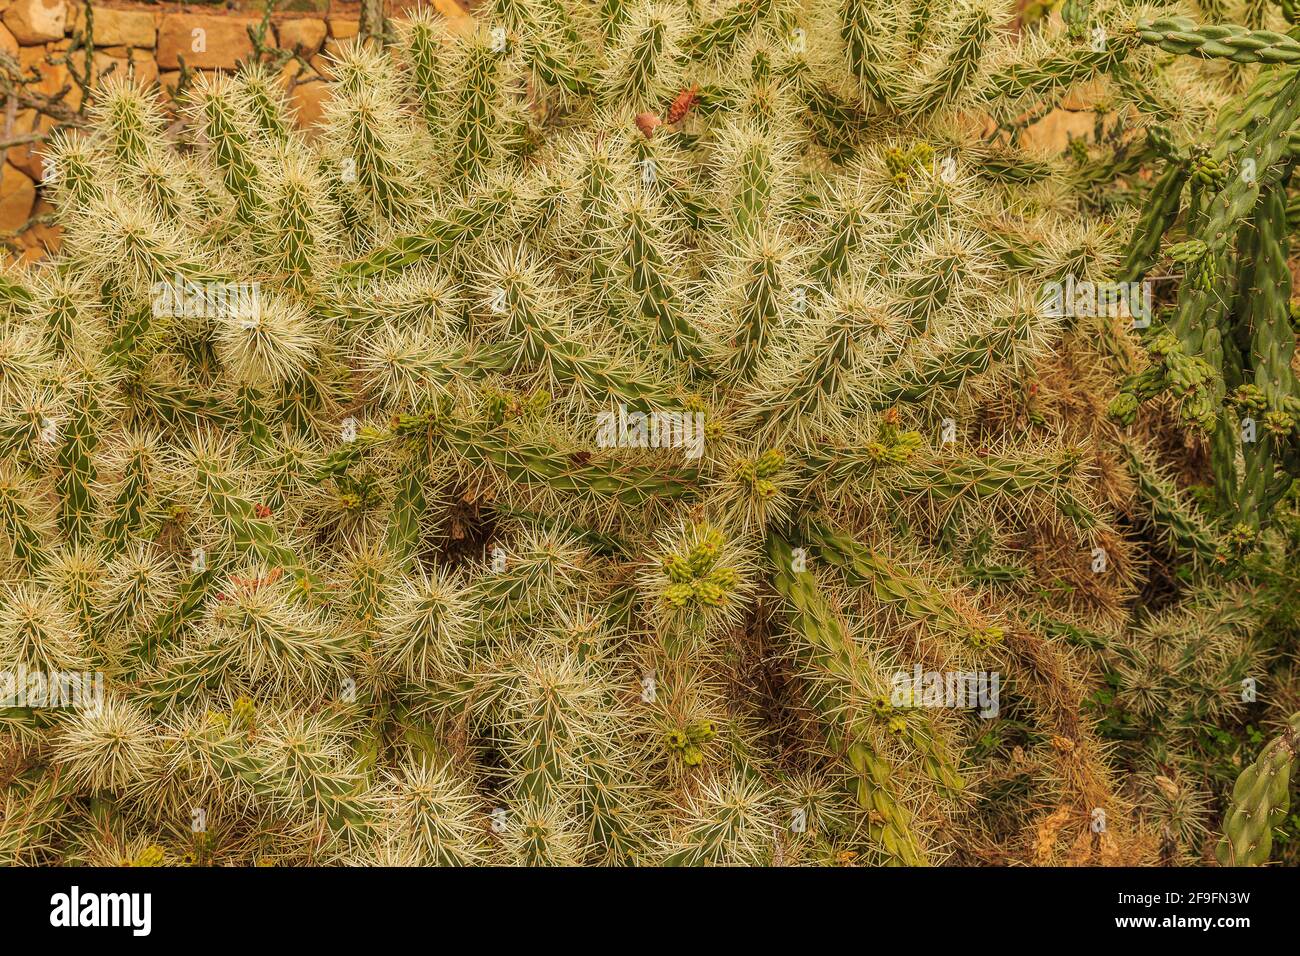 Kakteen Pflanzen Cylindropuntia tunicata aus der Wüste von Arizona ohne Blumen im Herbst. Gepflanzt im botanischen Garten auf steinigem Boden Stockfoto